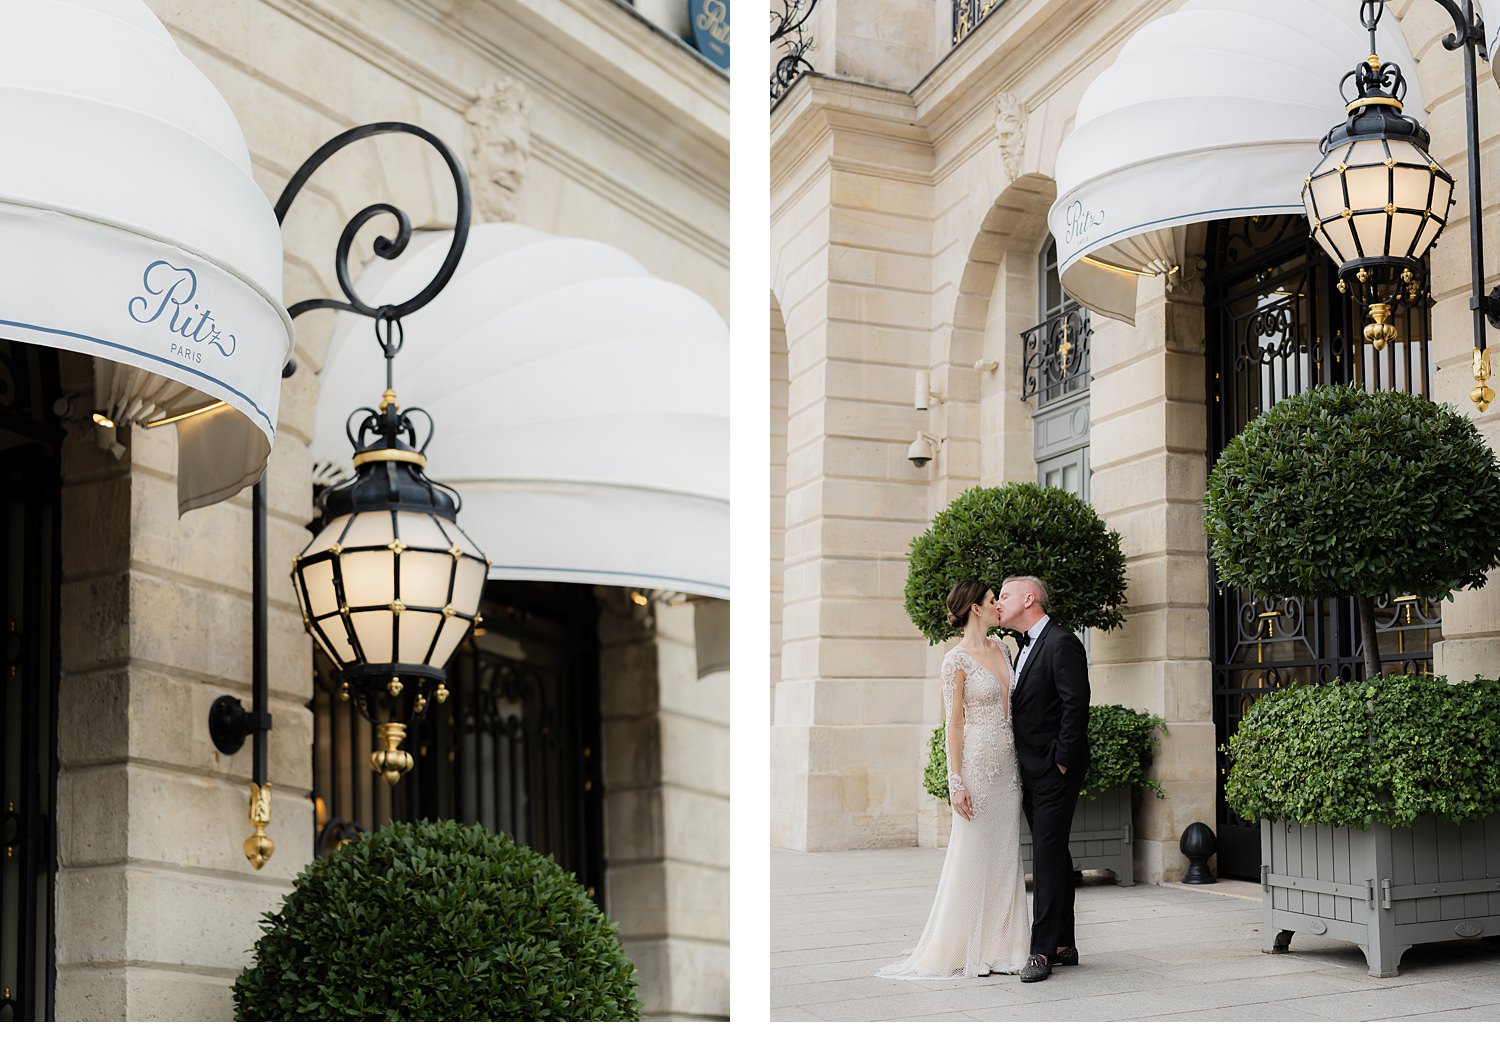 Elopement at the Ritz in Paris, Ritz Paris, Paris elopement, Elope in Paris, Elopement photographer in Paris